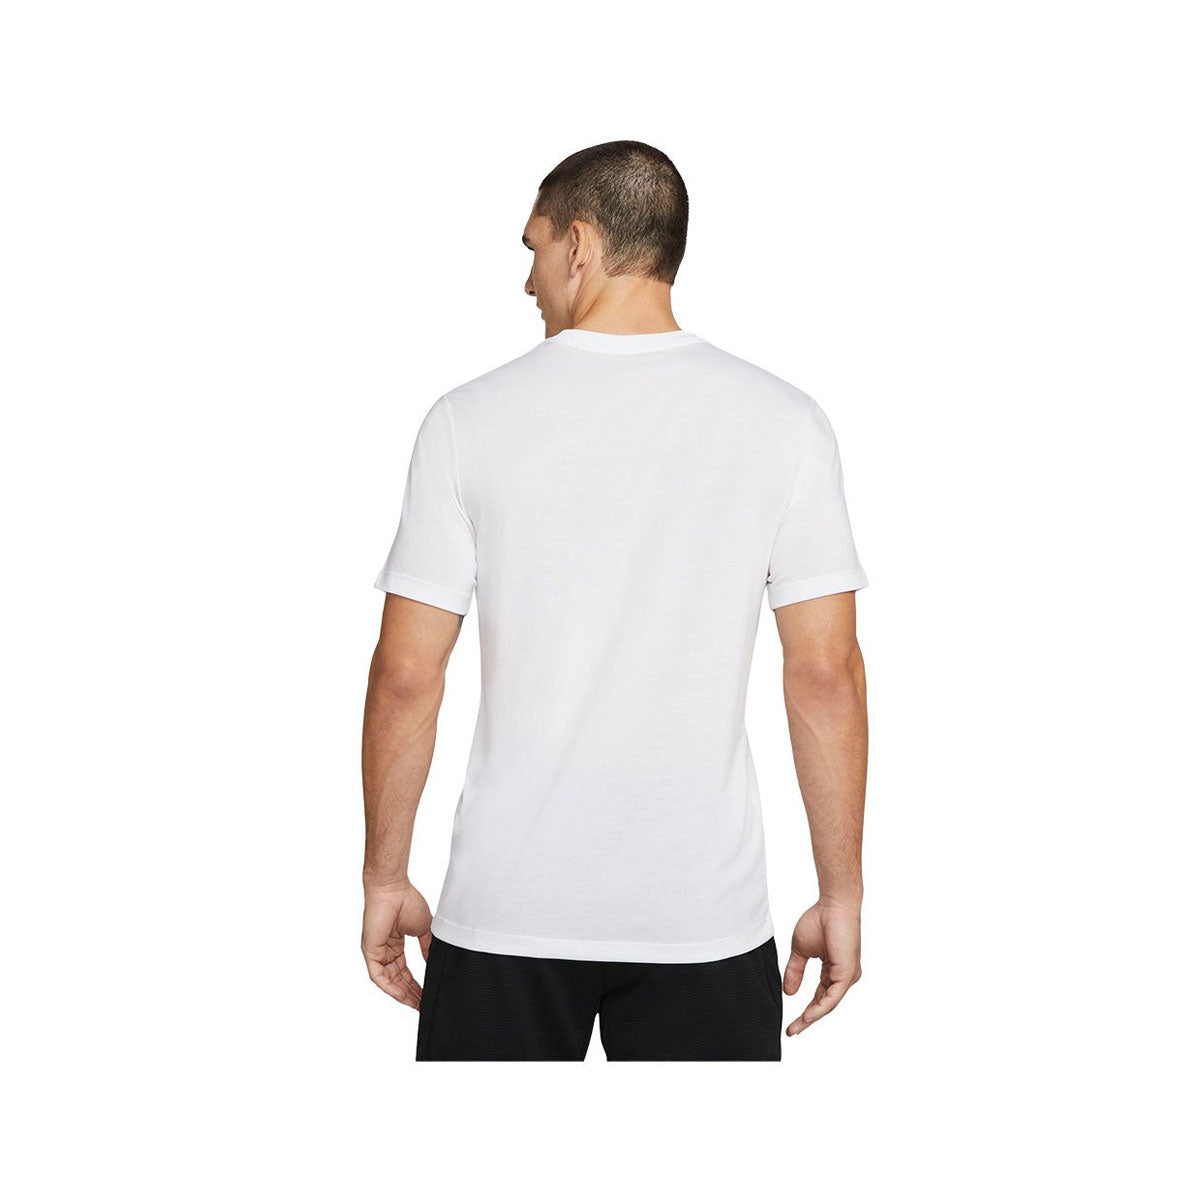 Nike Pro Men's Dri-FIT Training T-Shirt